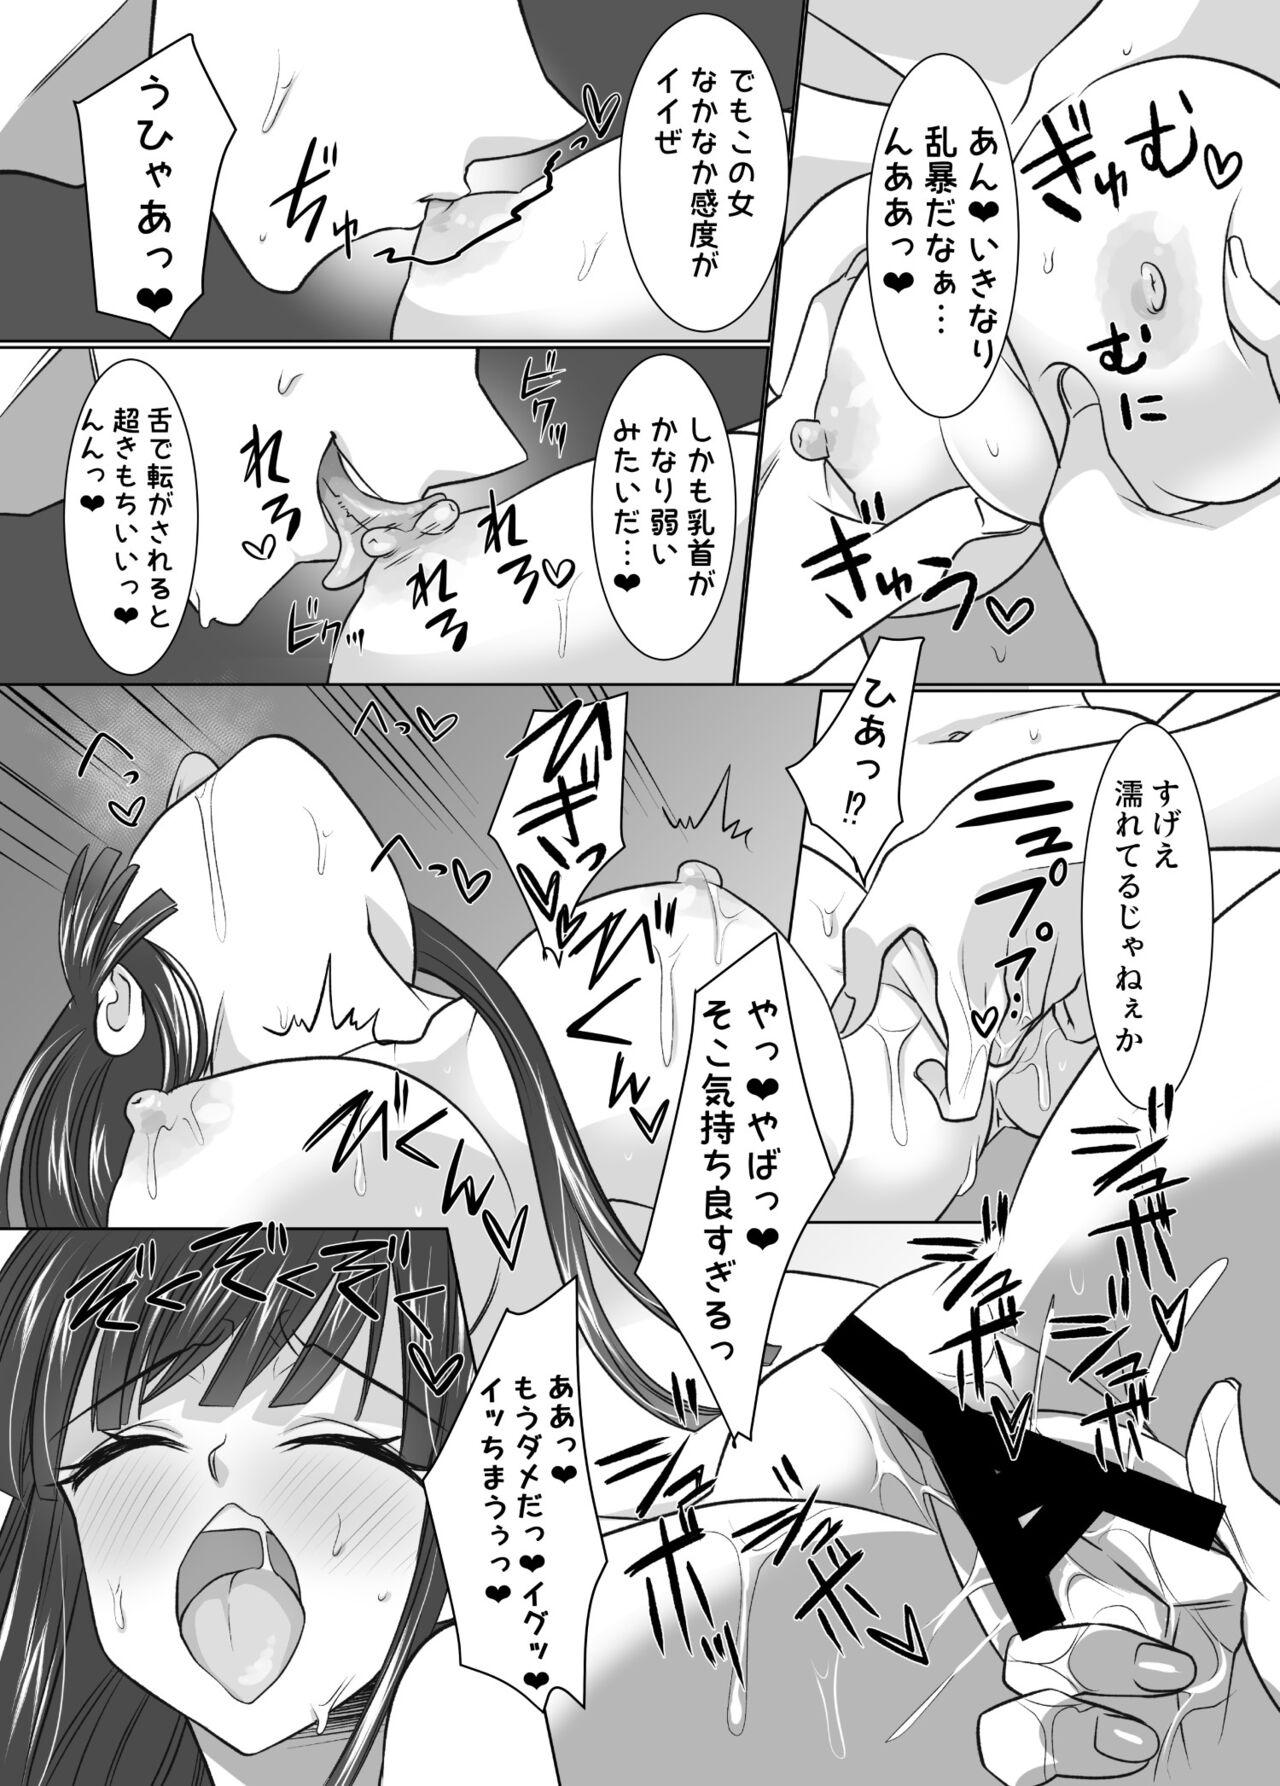 Sapphicerotica komike de hyoui！ buru aka dosukebe kosupureiya- wo no xtu to ri teikuauto - Blue archive Officesex - Page 8